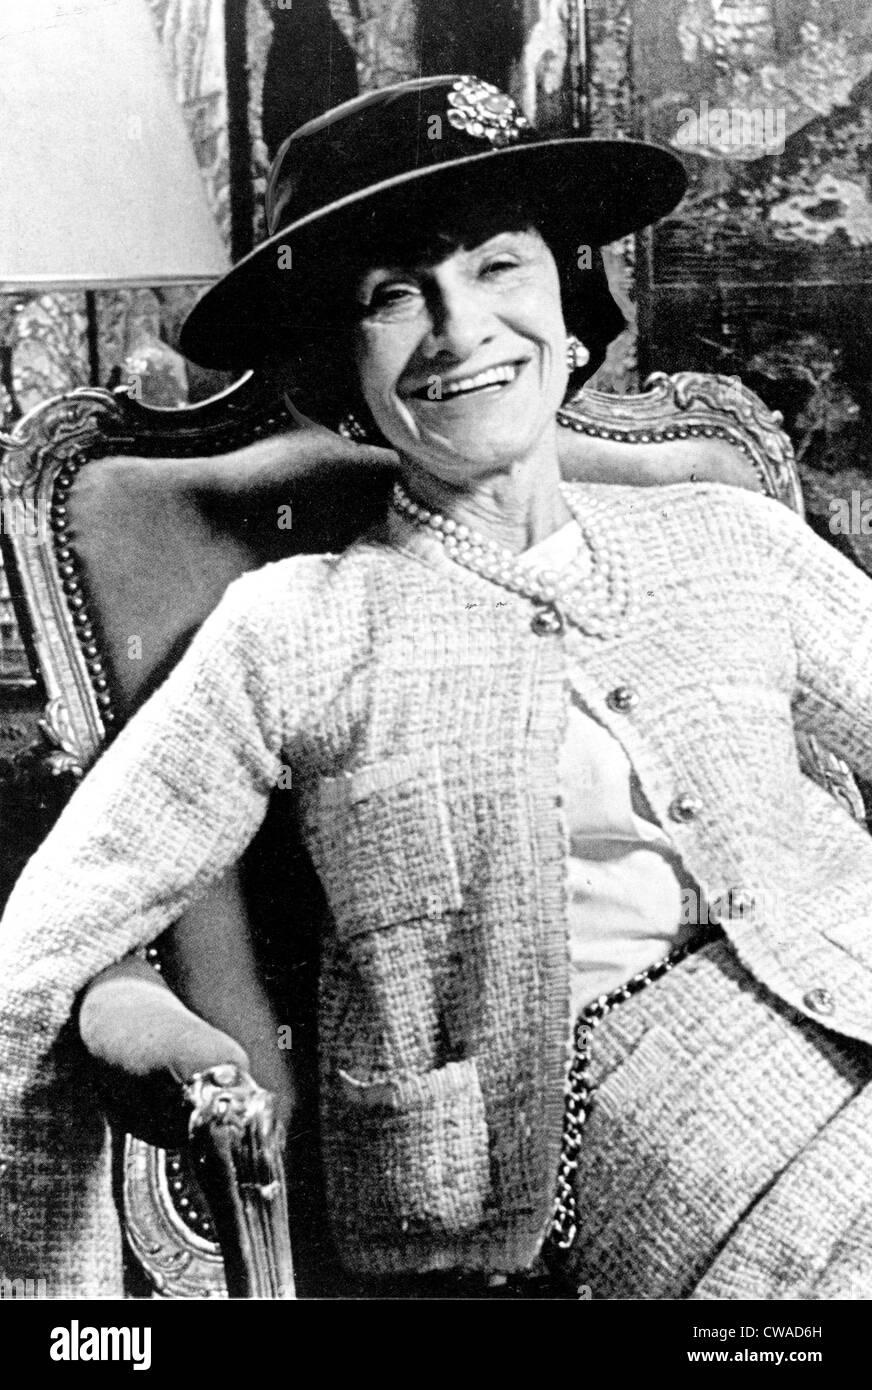 Coco Chanel, 1954 Stockfotografie - Alamy